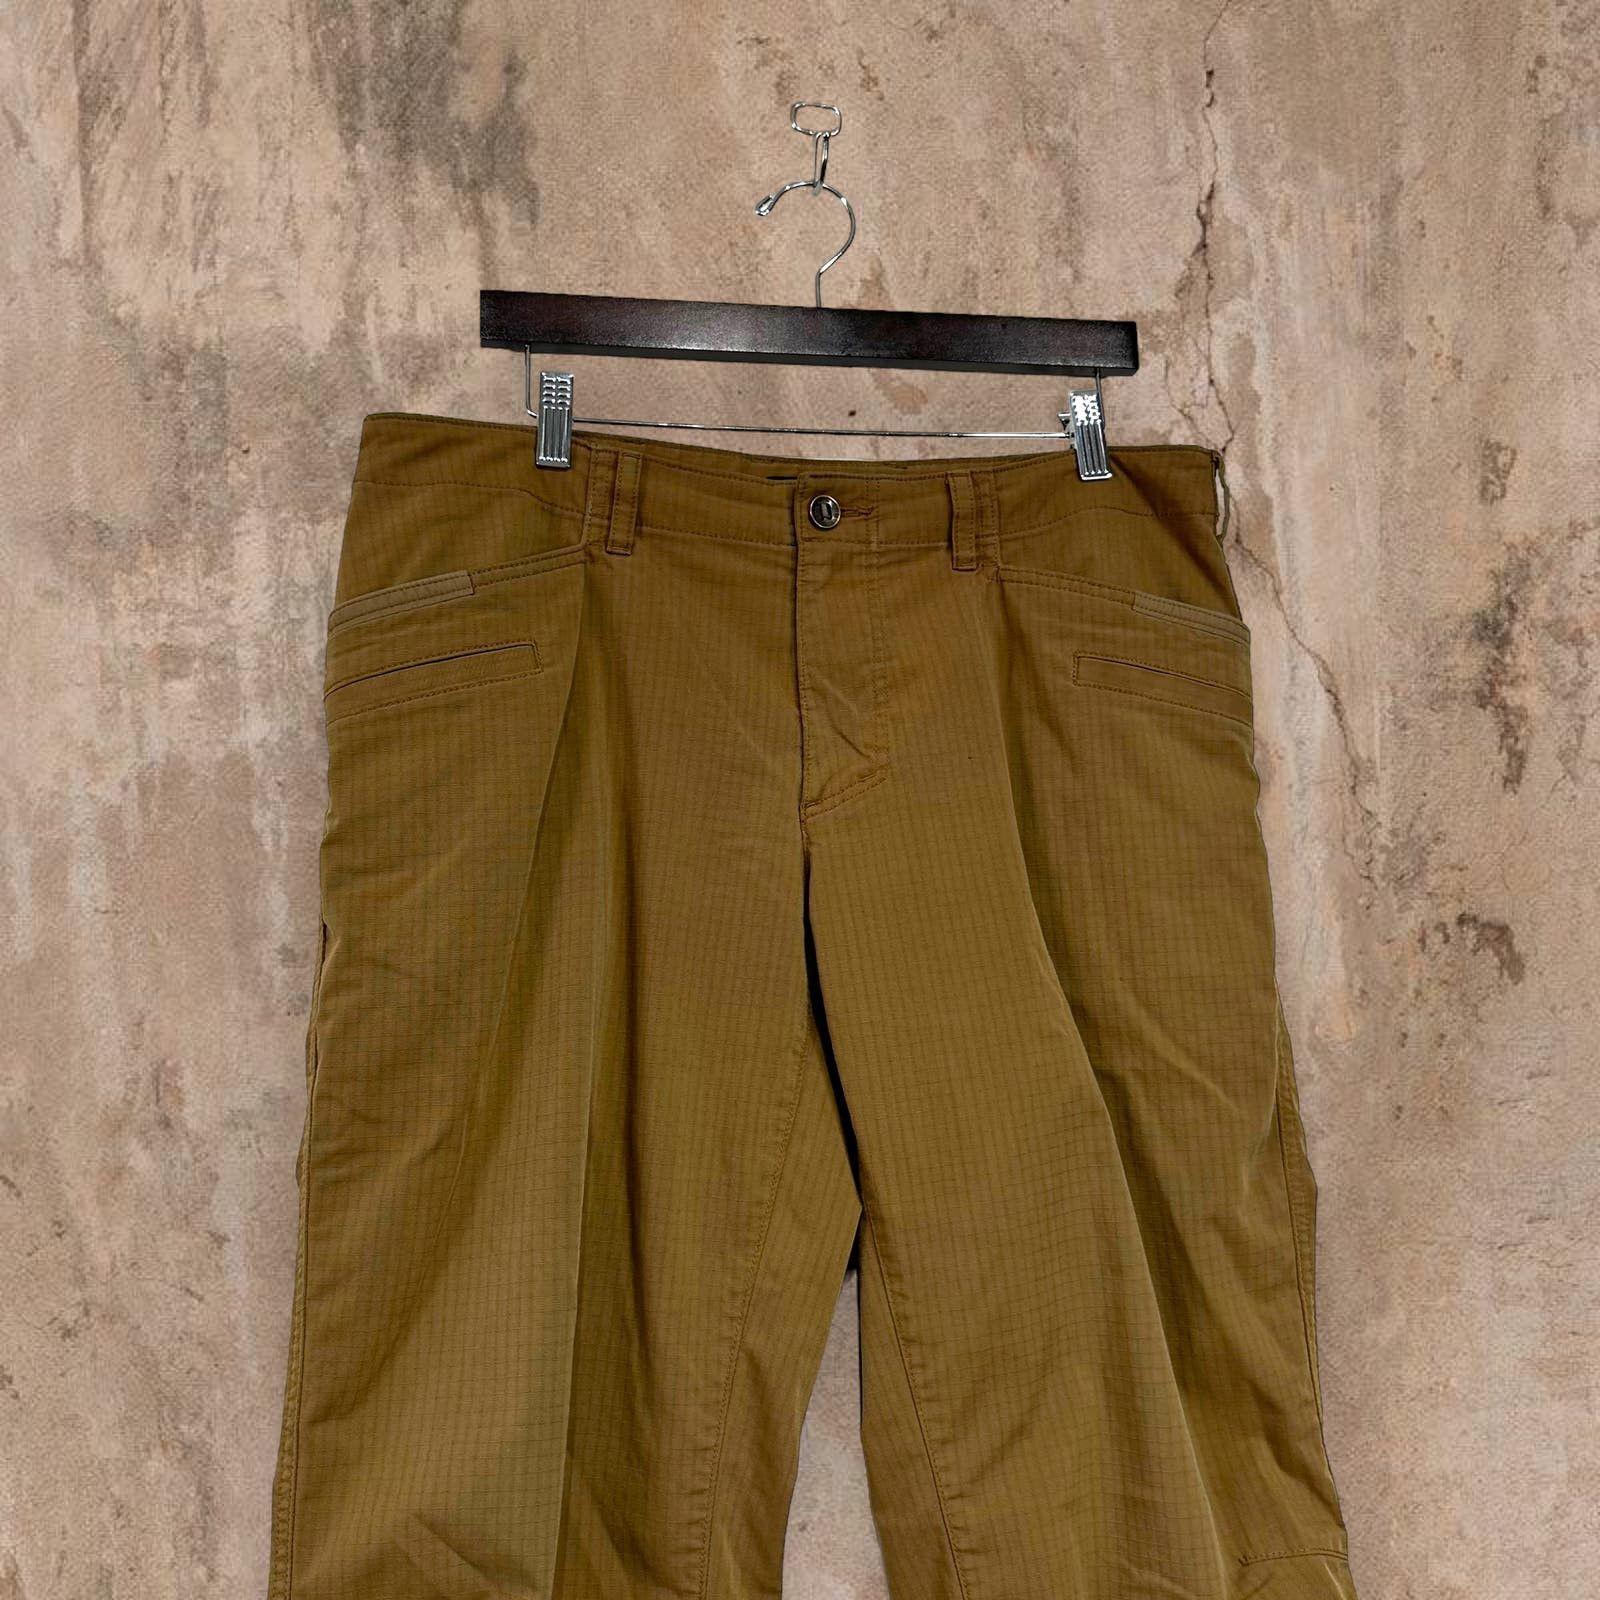 Vintage Vintage 5.11 Tactical Pants Tan Baggy Fit Cargos 90s Size US 36 / EU 52 - 4 Thumbnail